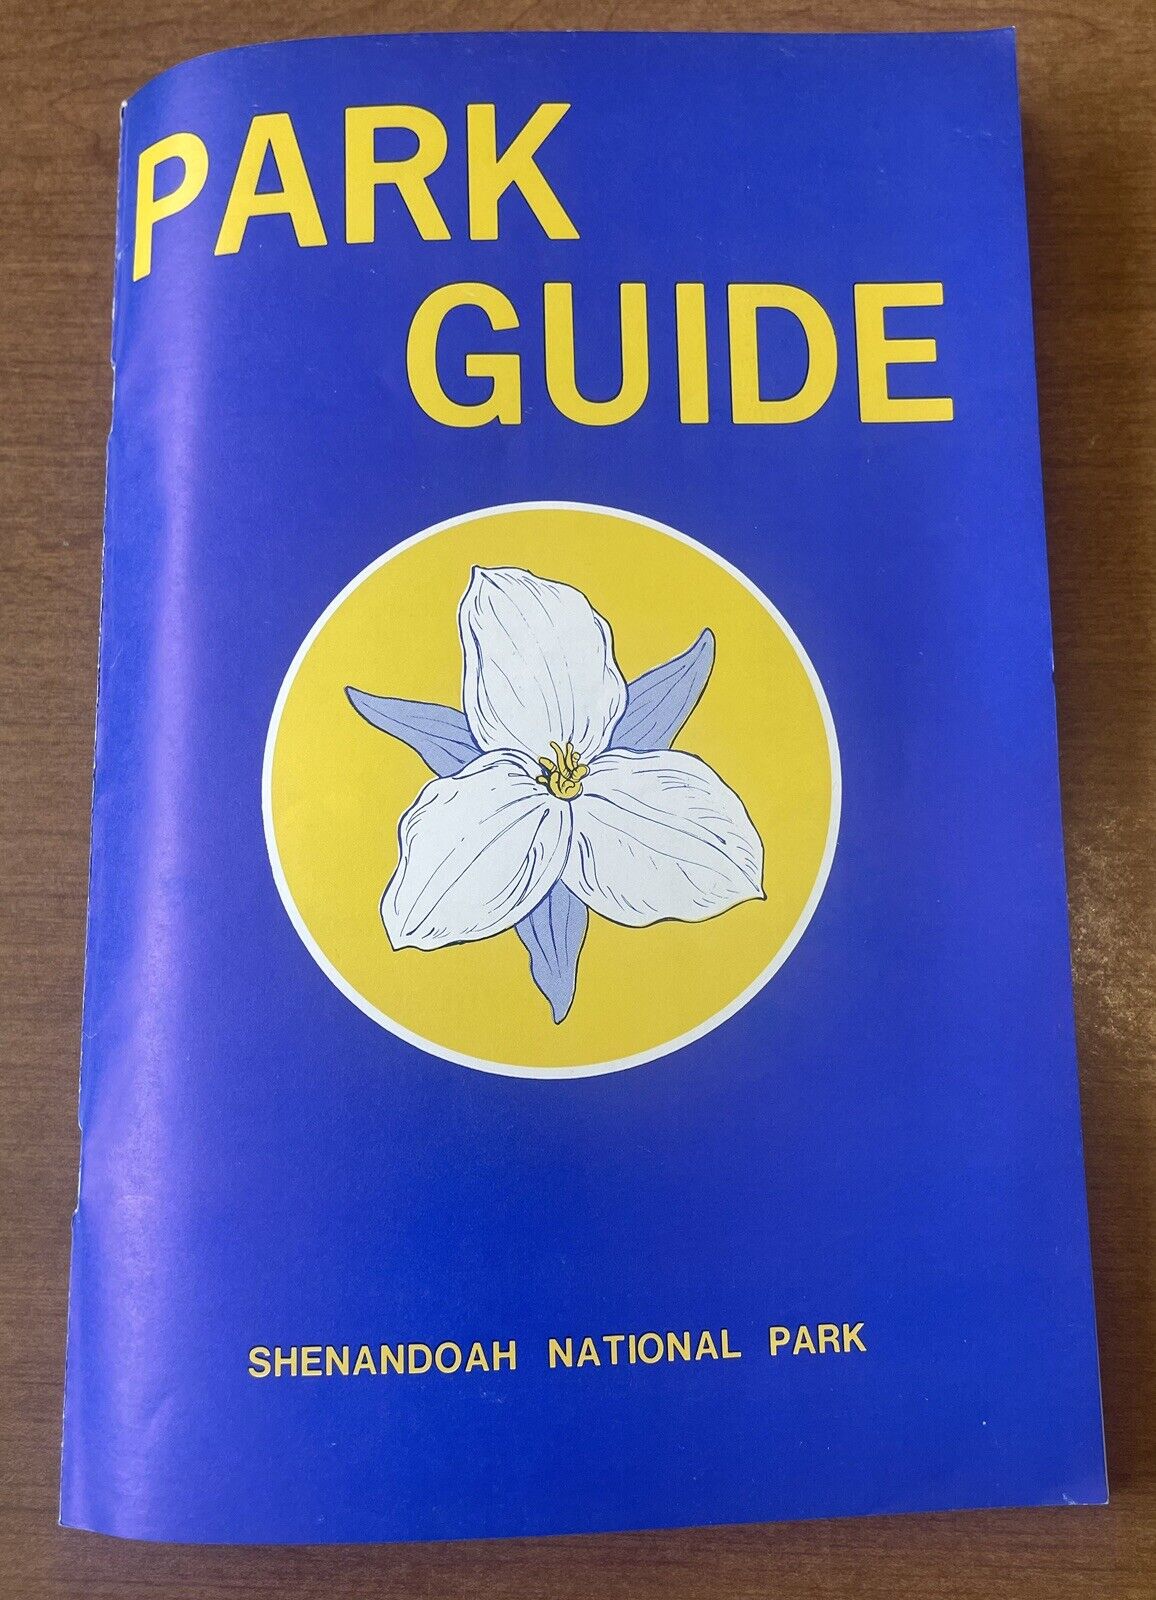 Shenandoah National Park Guide 1980 Edition Vintage Travel Brochure